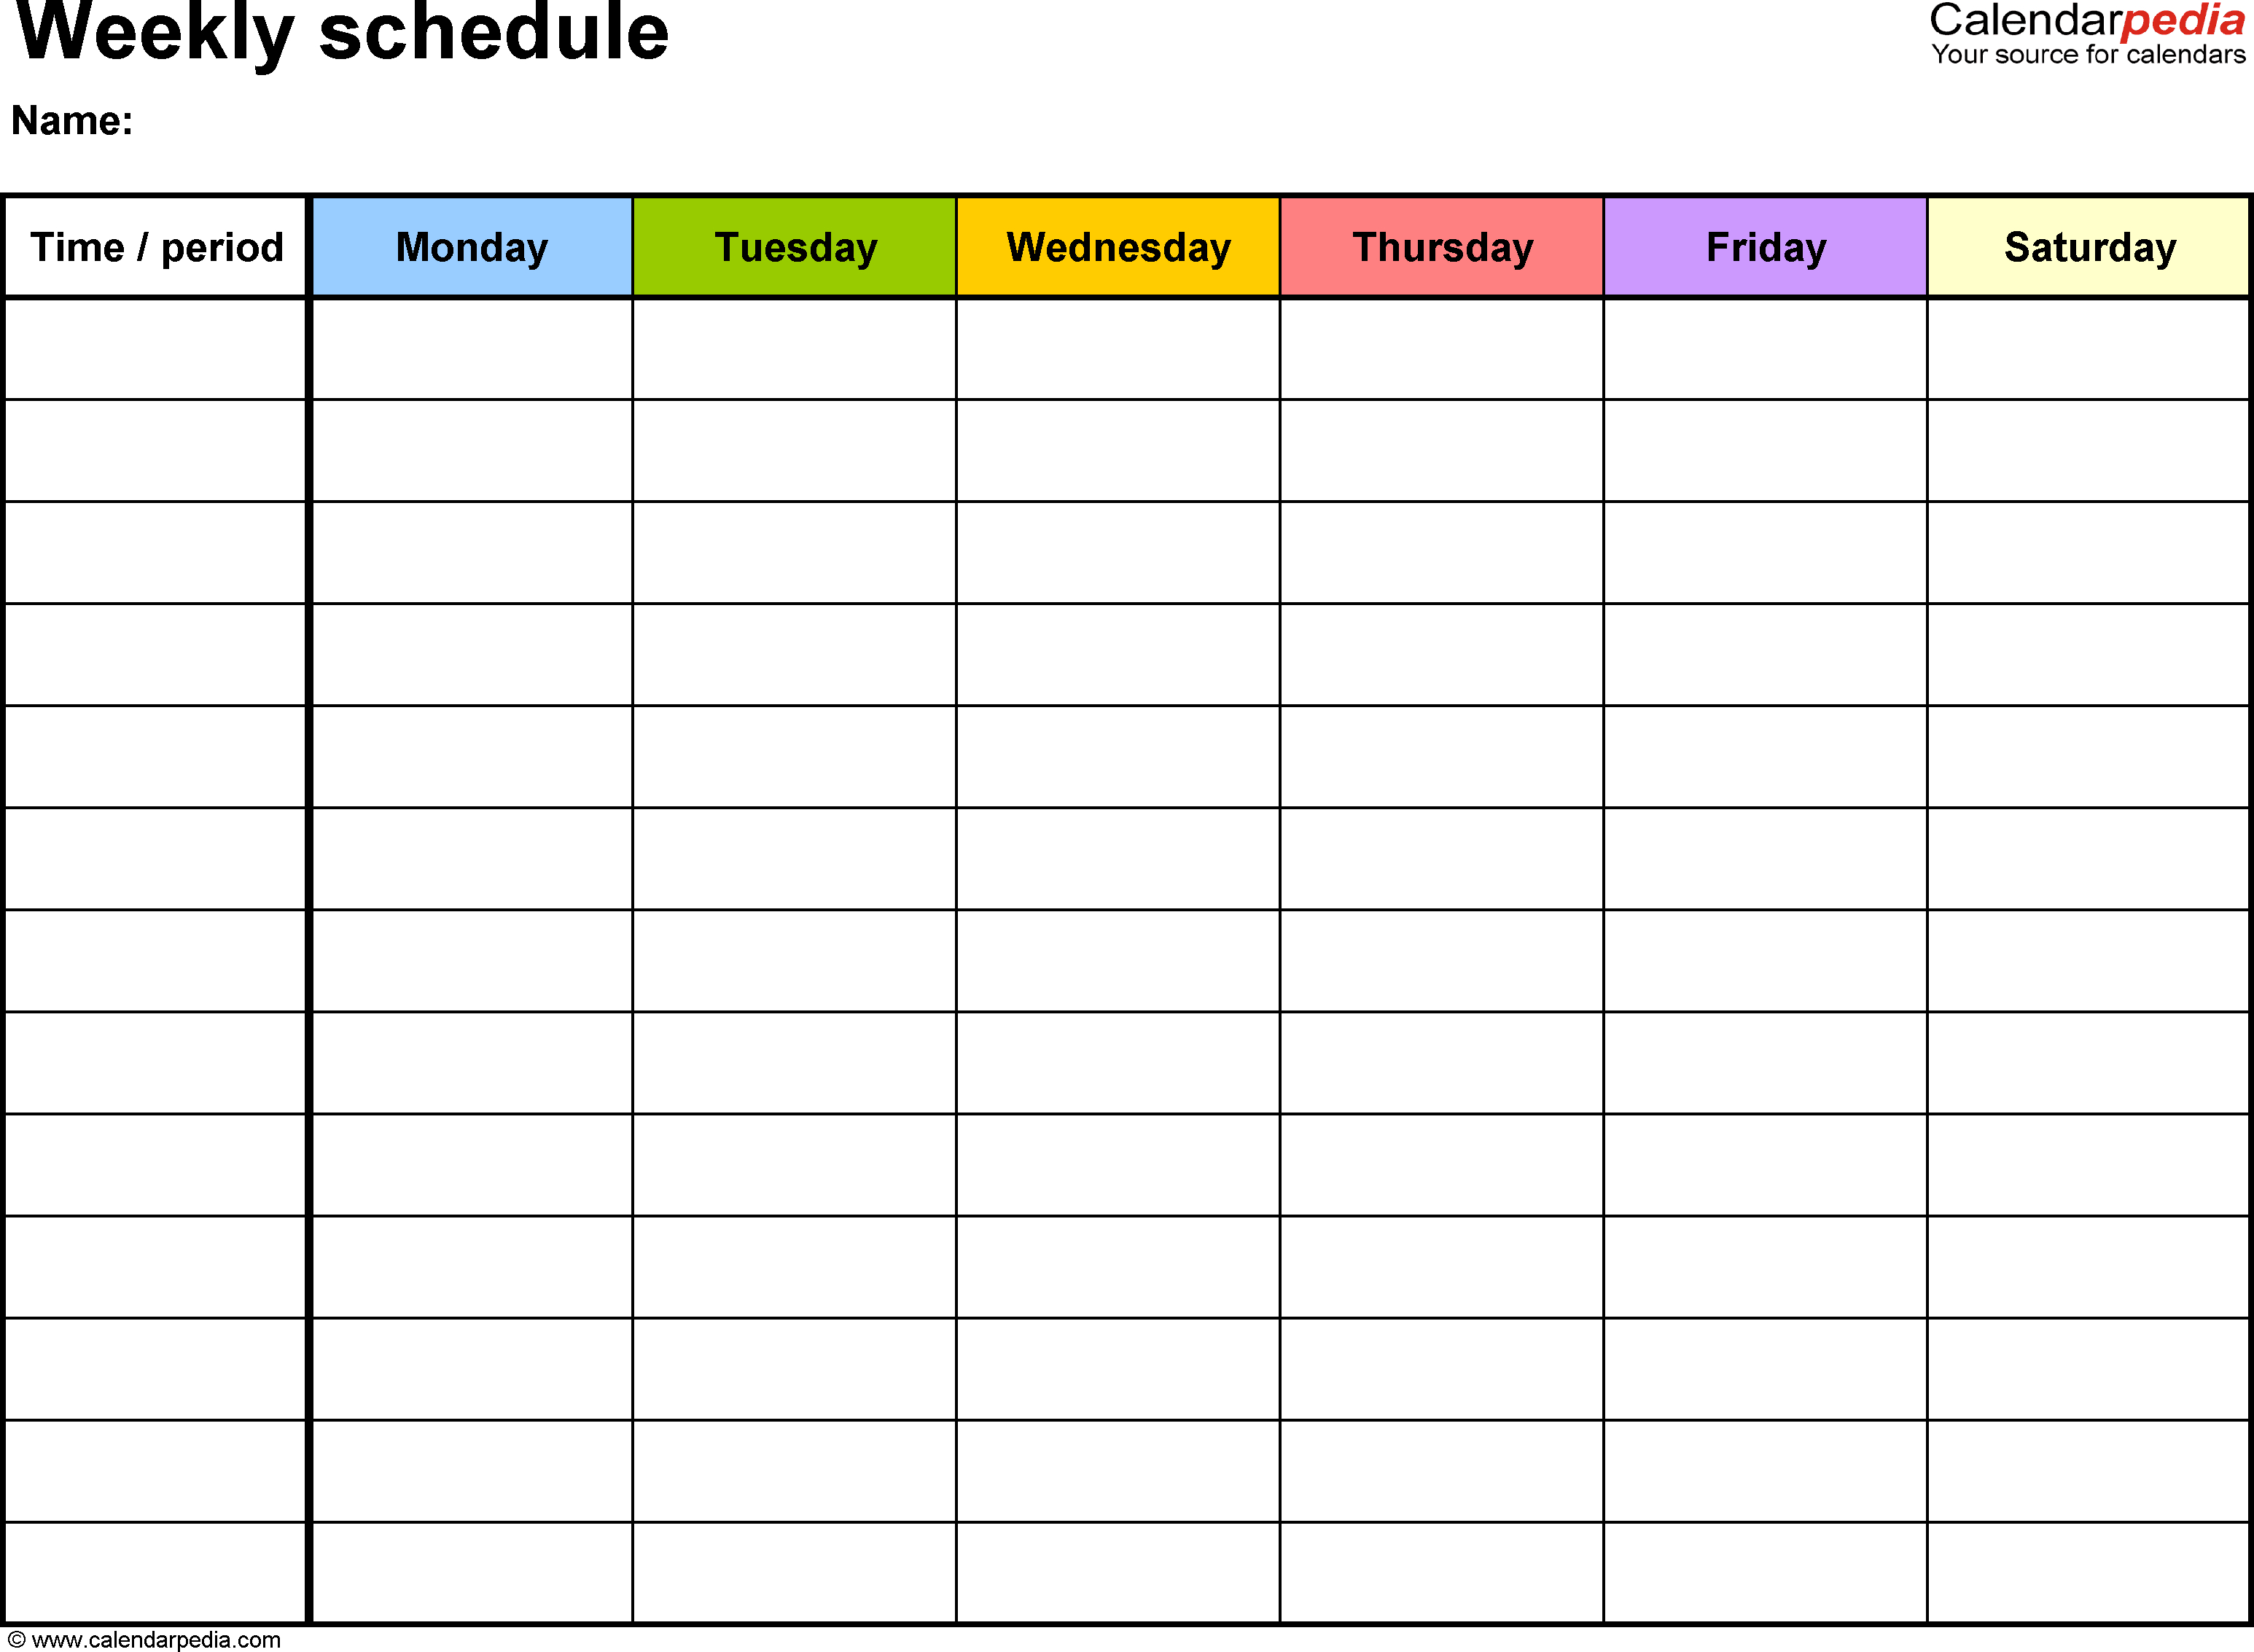 Weekly+Schedule+Template | Weekly Calendar Template pertaining to Weekly Calendar Template With Times